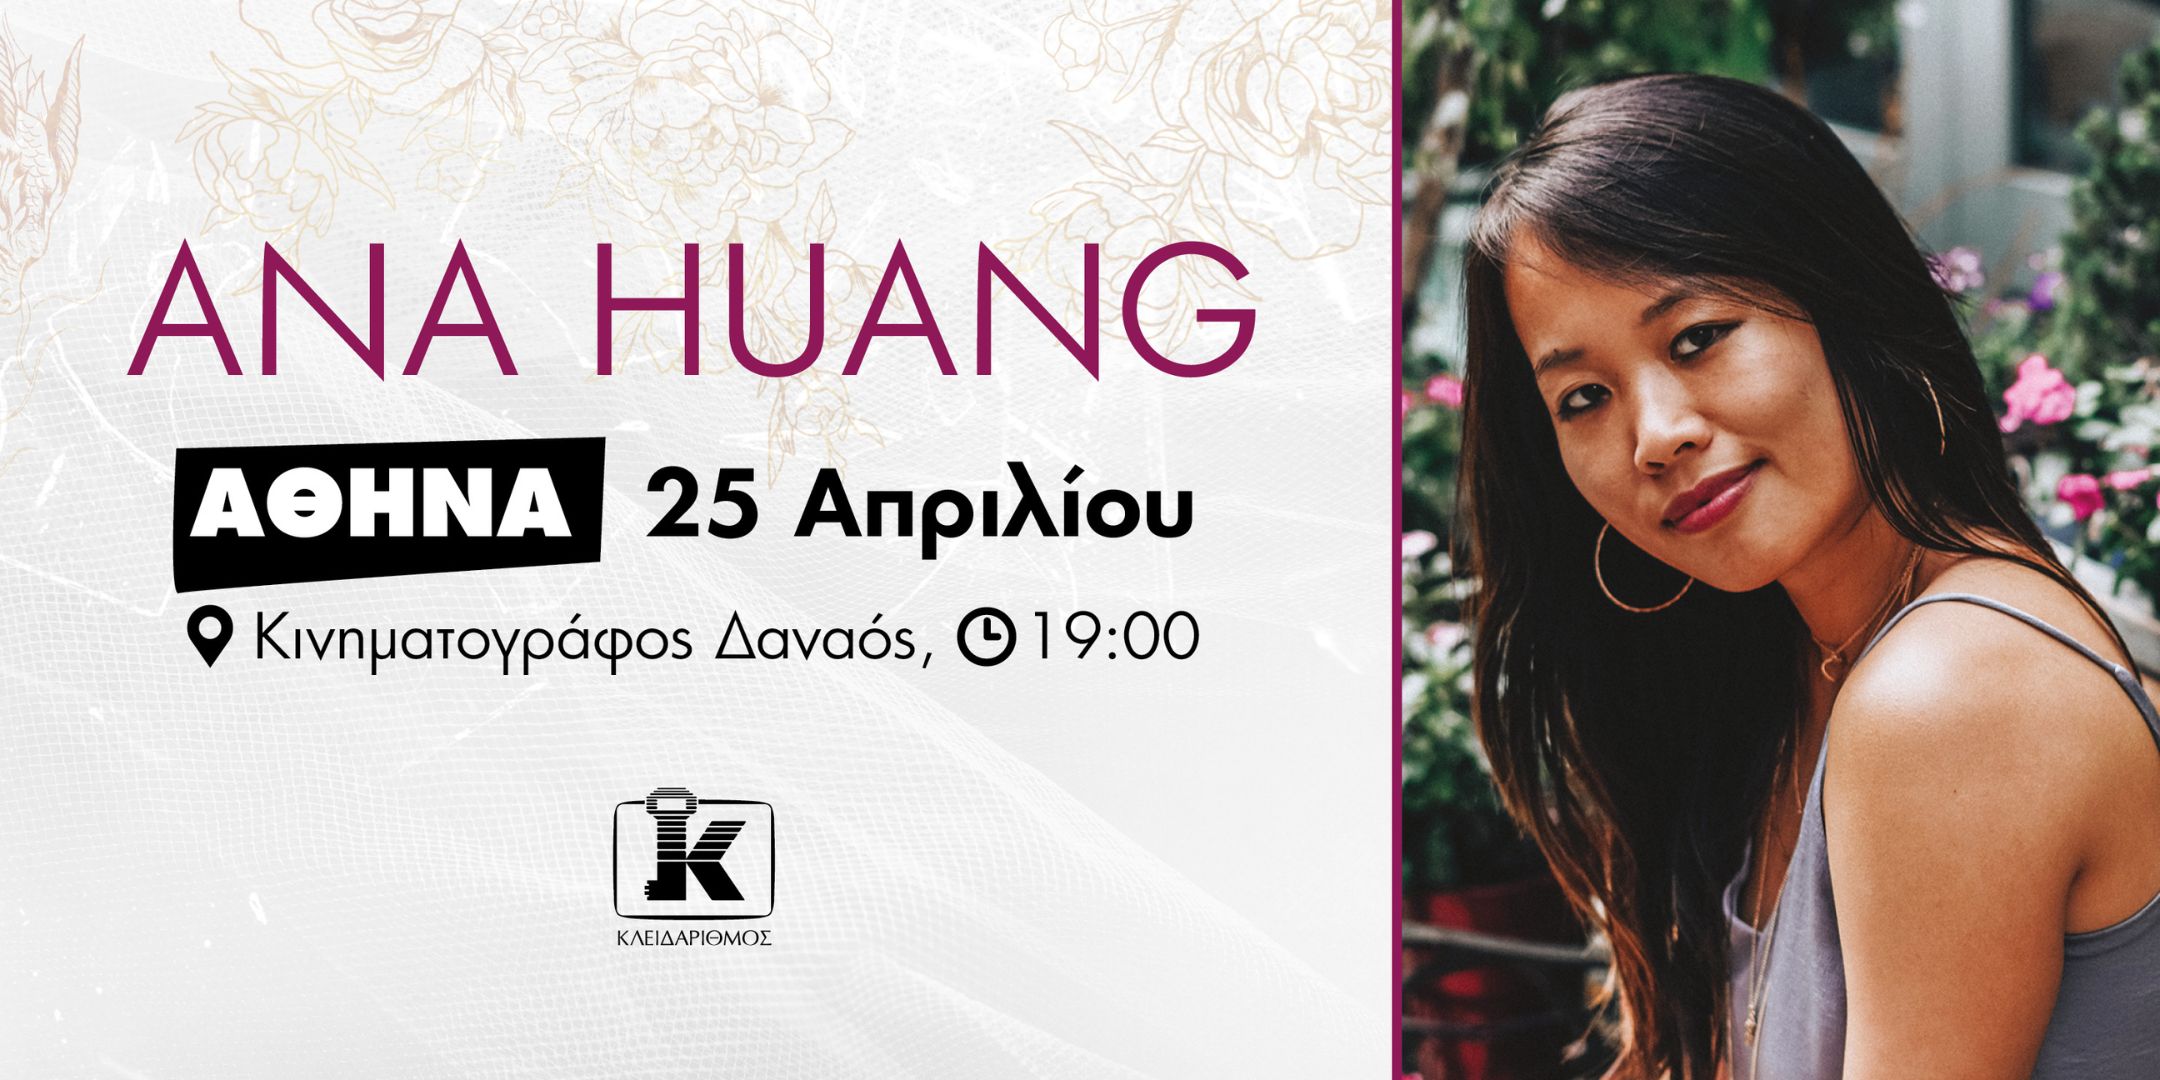 Η Ana Huang έρχεται στην Ελλάδα!